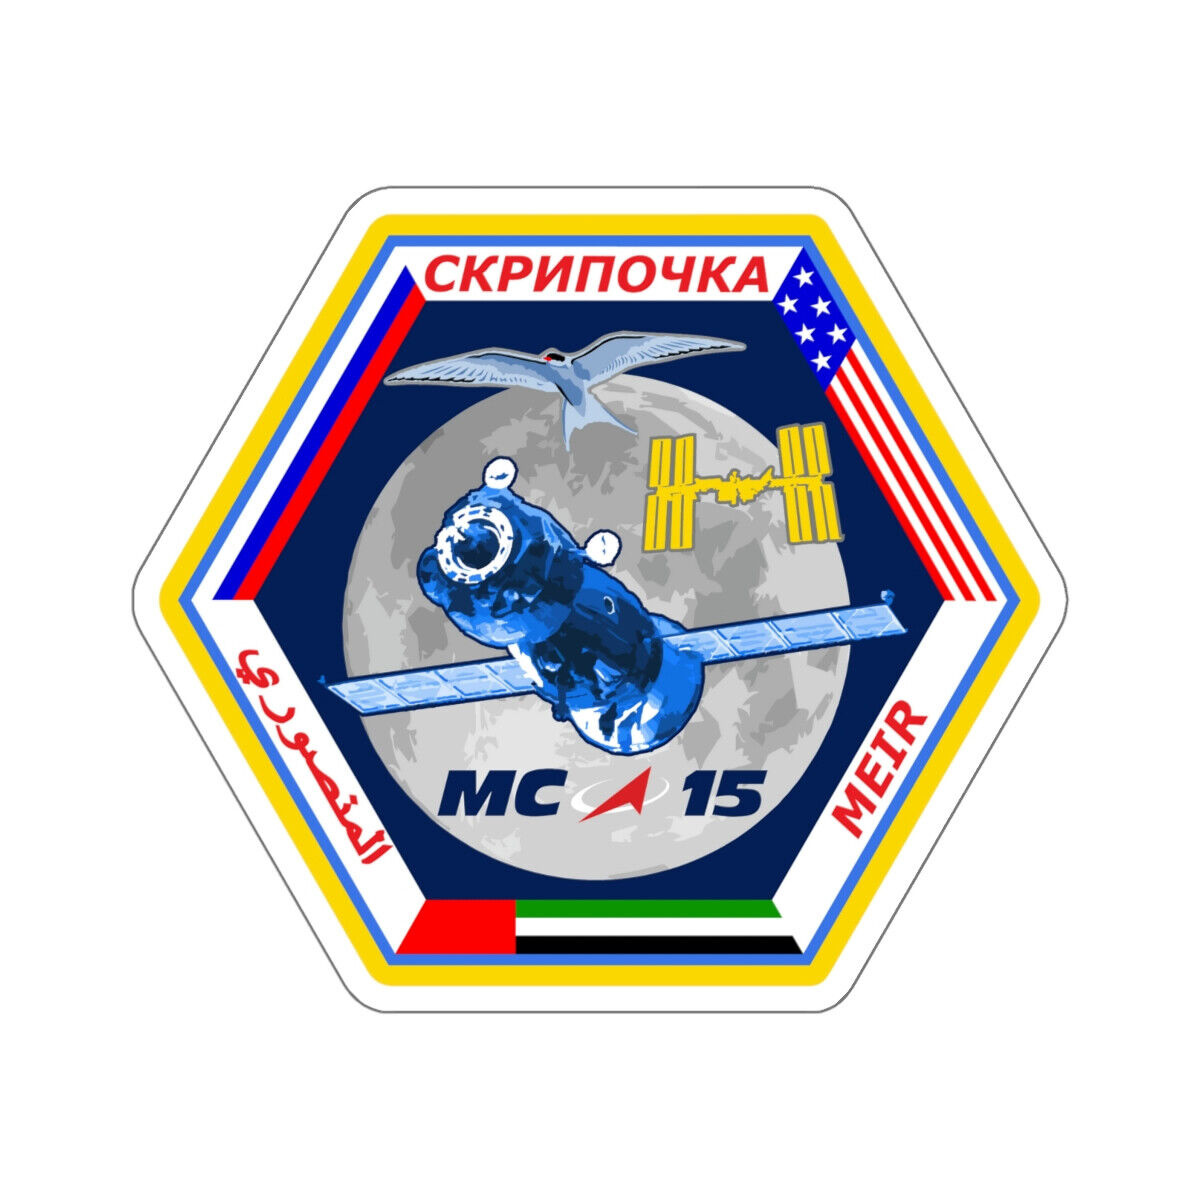 Soyuz MS-15 (Soviet Space Program) STICKER Vinyl Die-Cut Decal